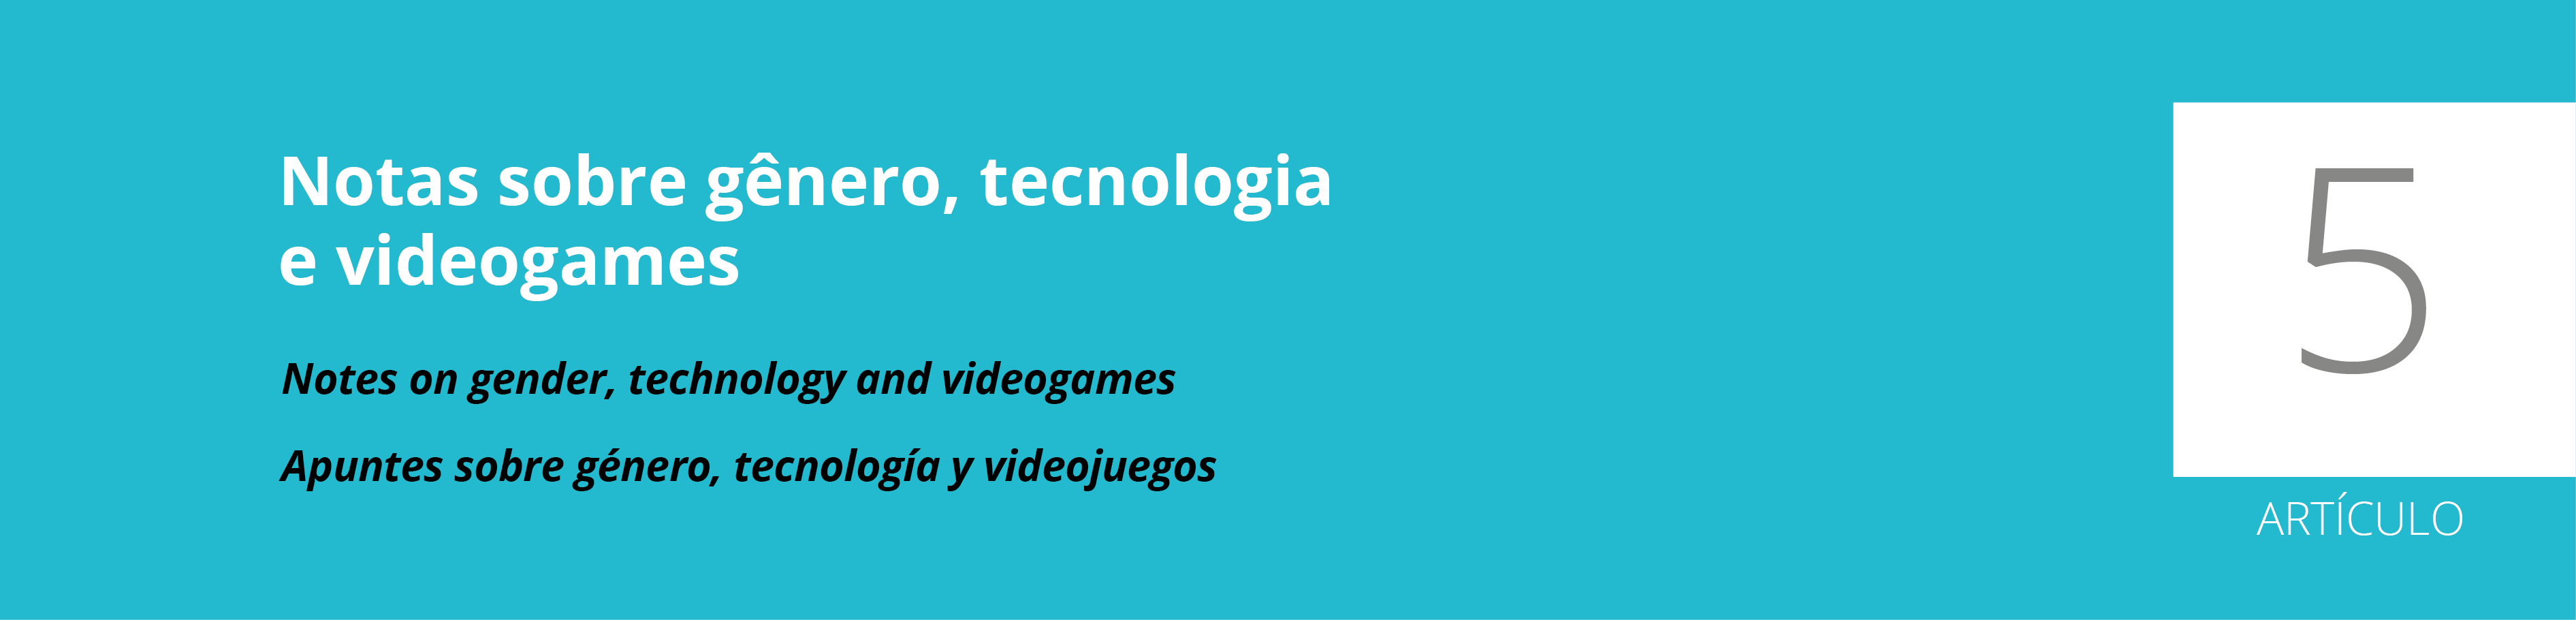 Estereótipos nos games: uma pesquisa sobre gênero e videogames.